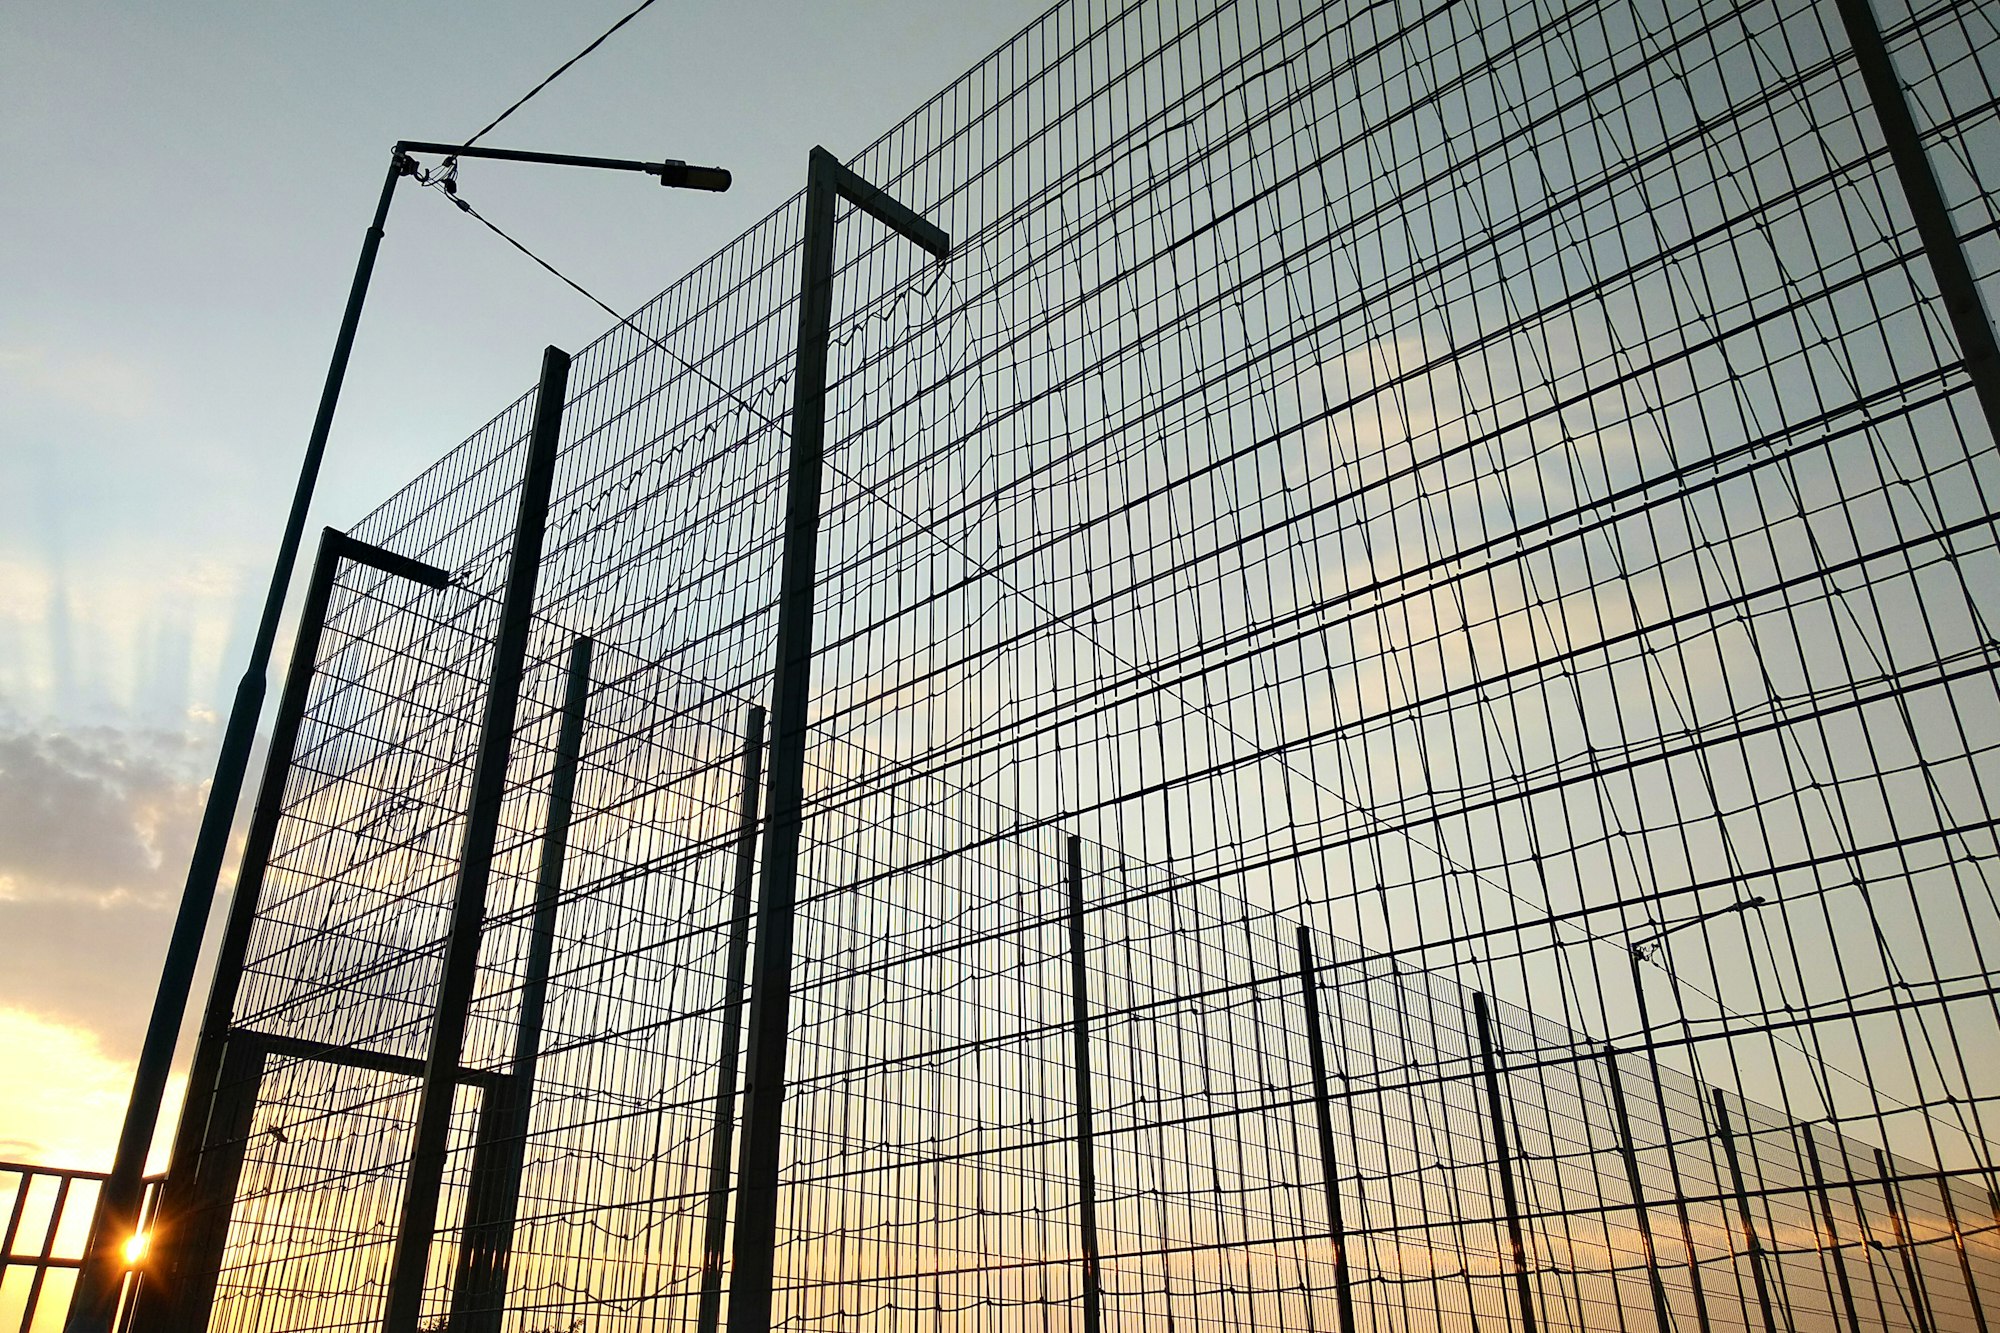 Recinzione in rete metallica alta in area riservata su sfondo blu cielo.